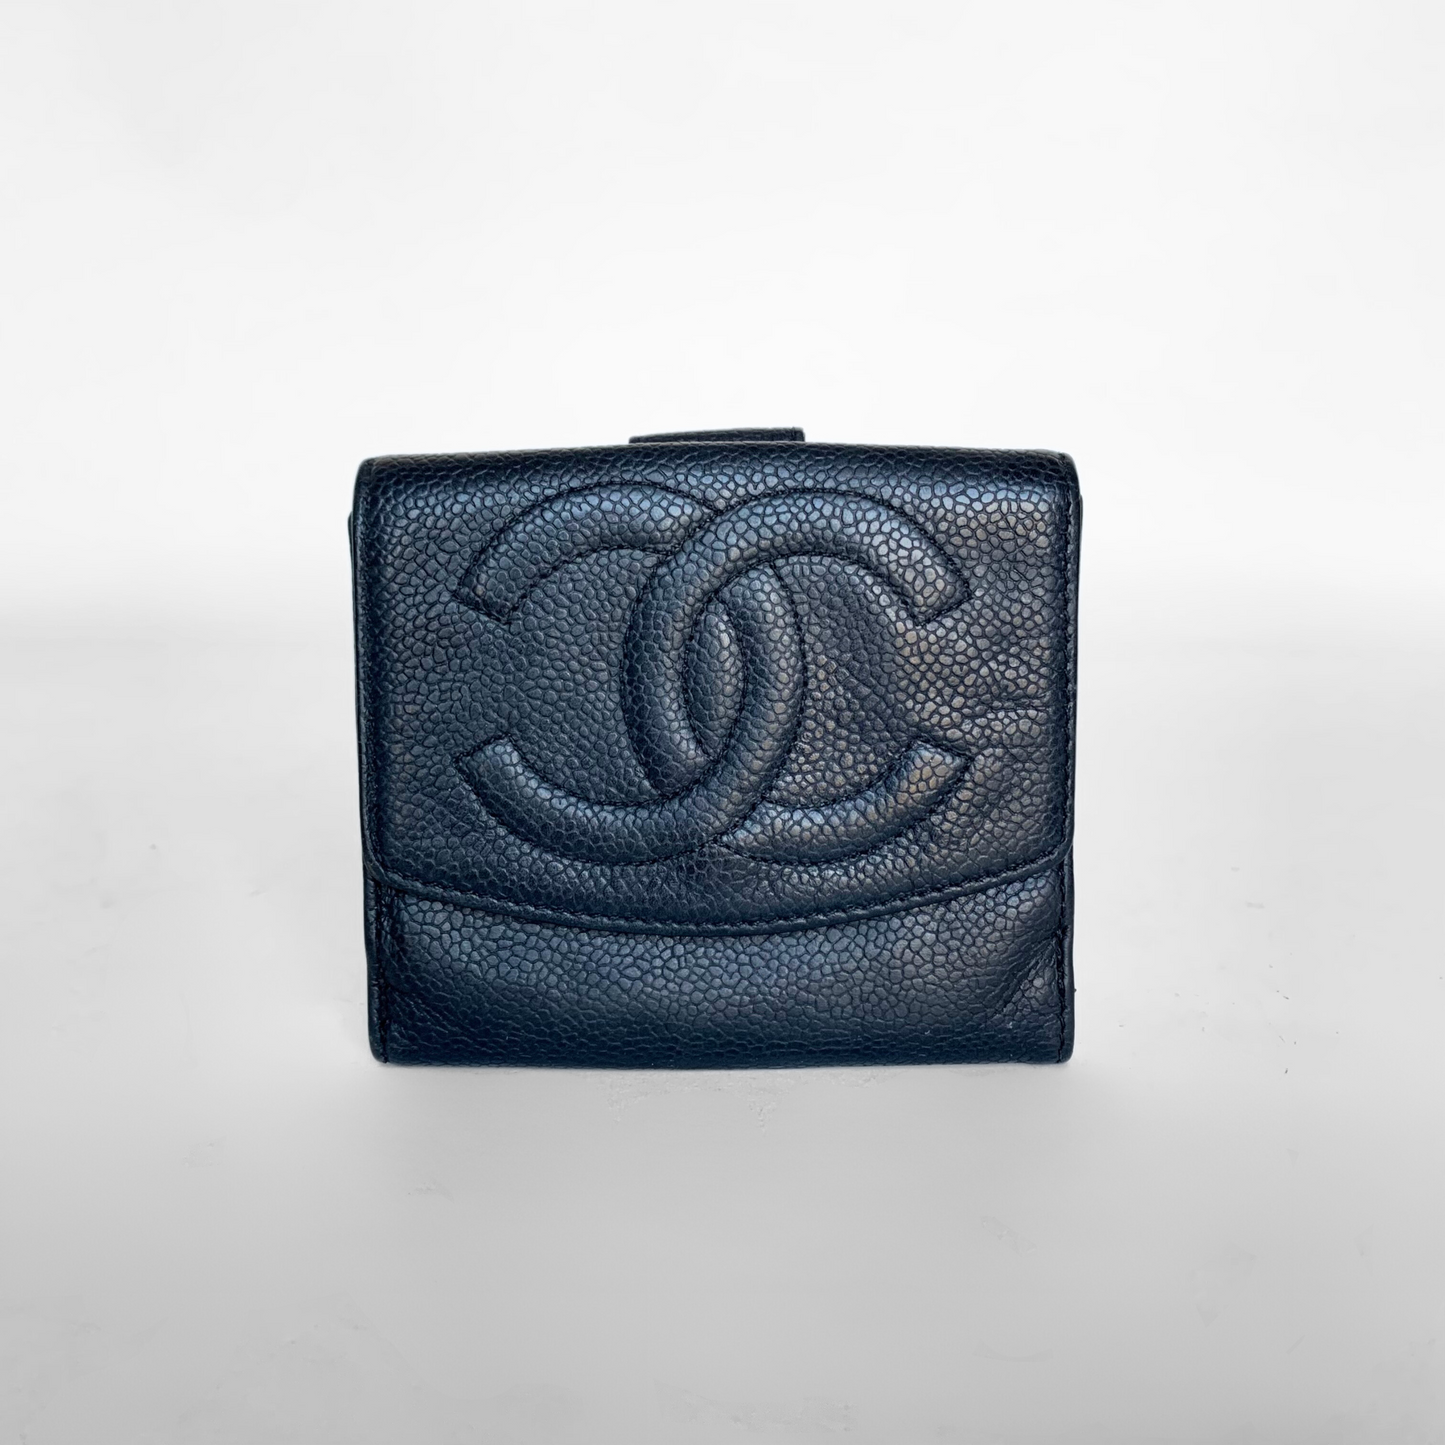 Chanel Chanel Portafoglio CC Piccolo in Pelle Caviale - Portafogli - Etoile Luxury Vintage